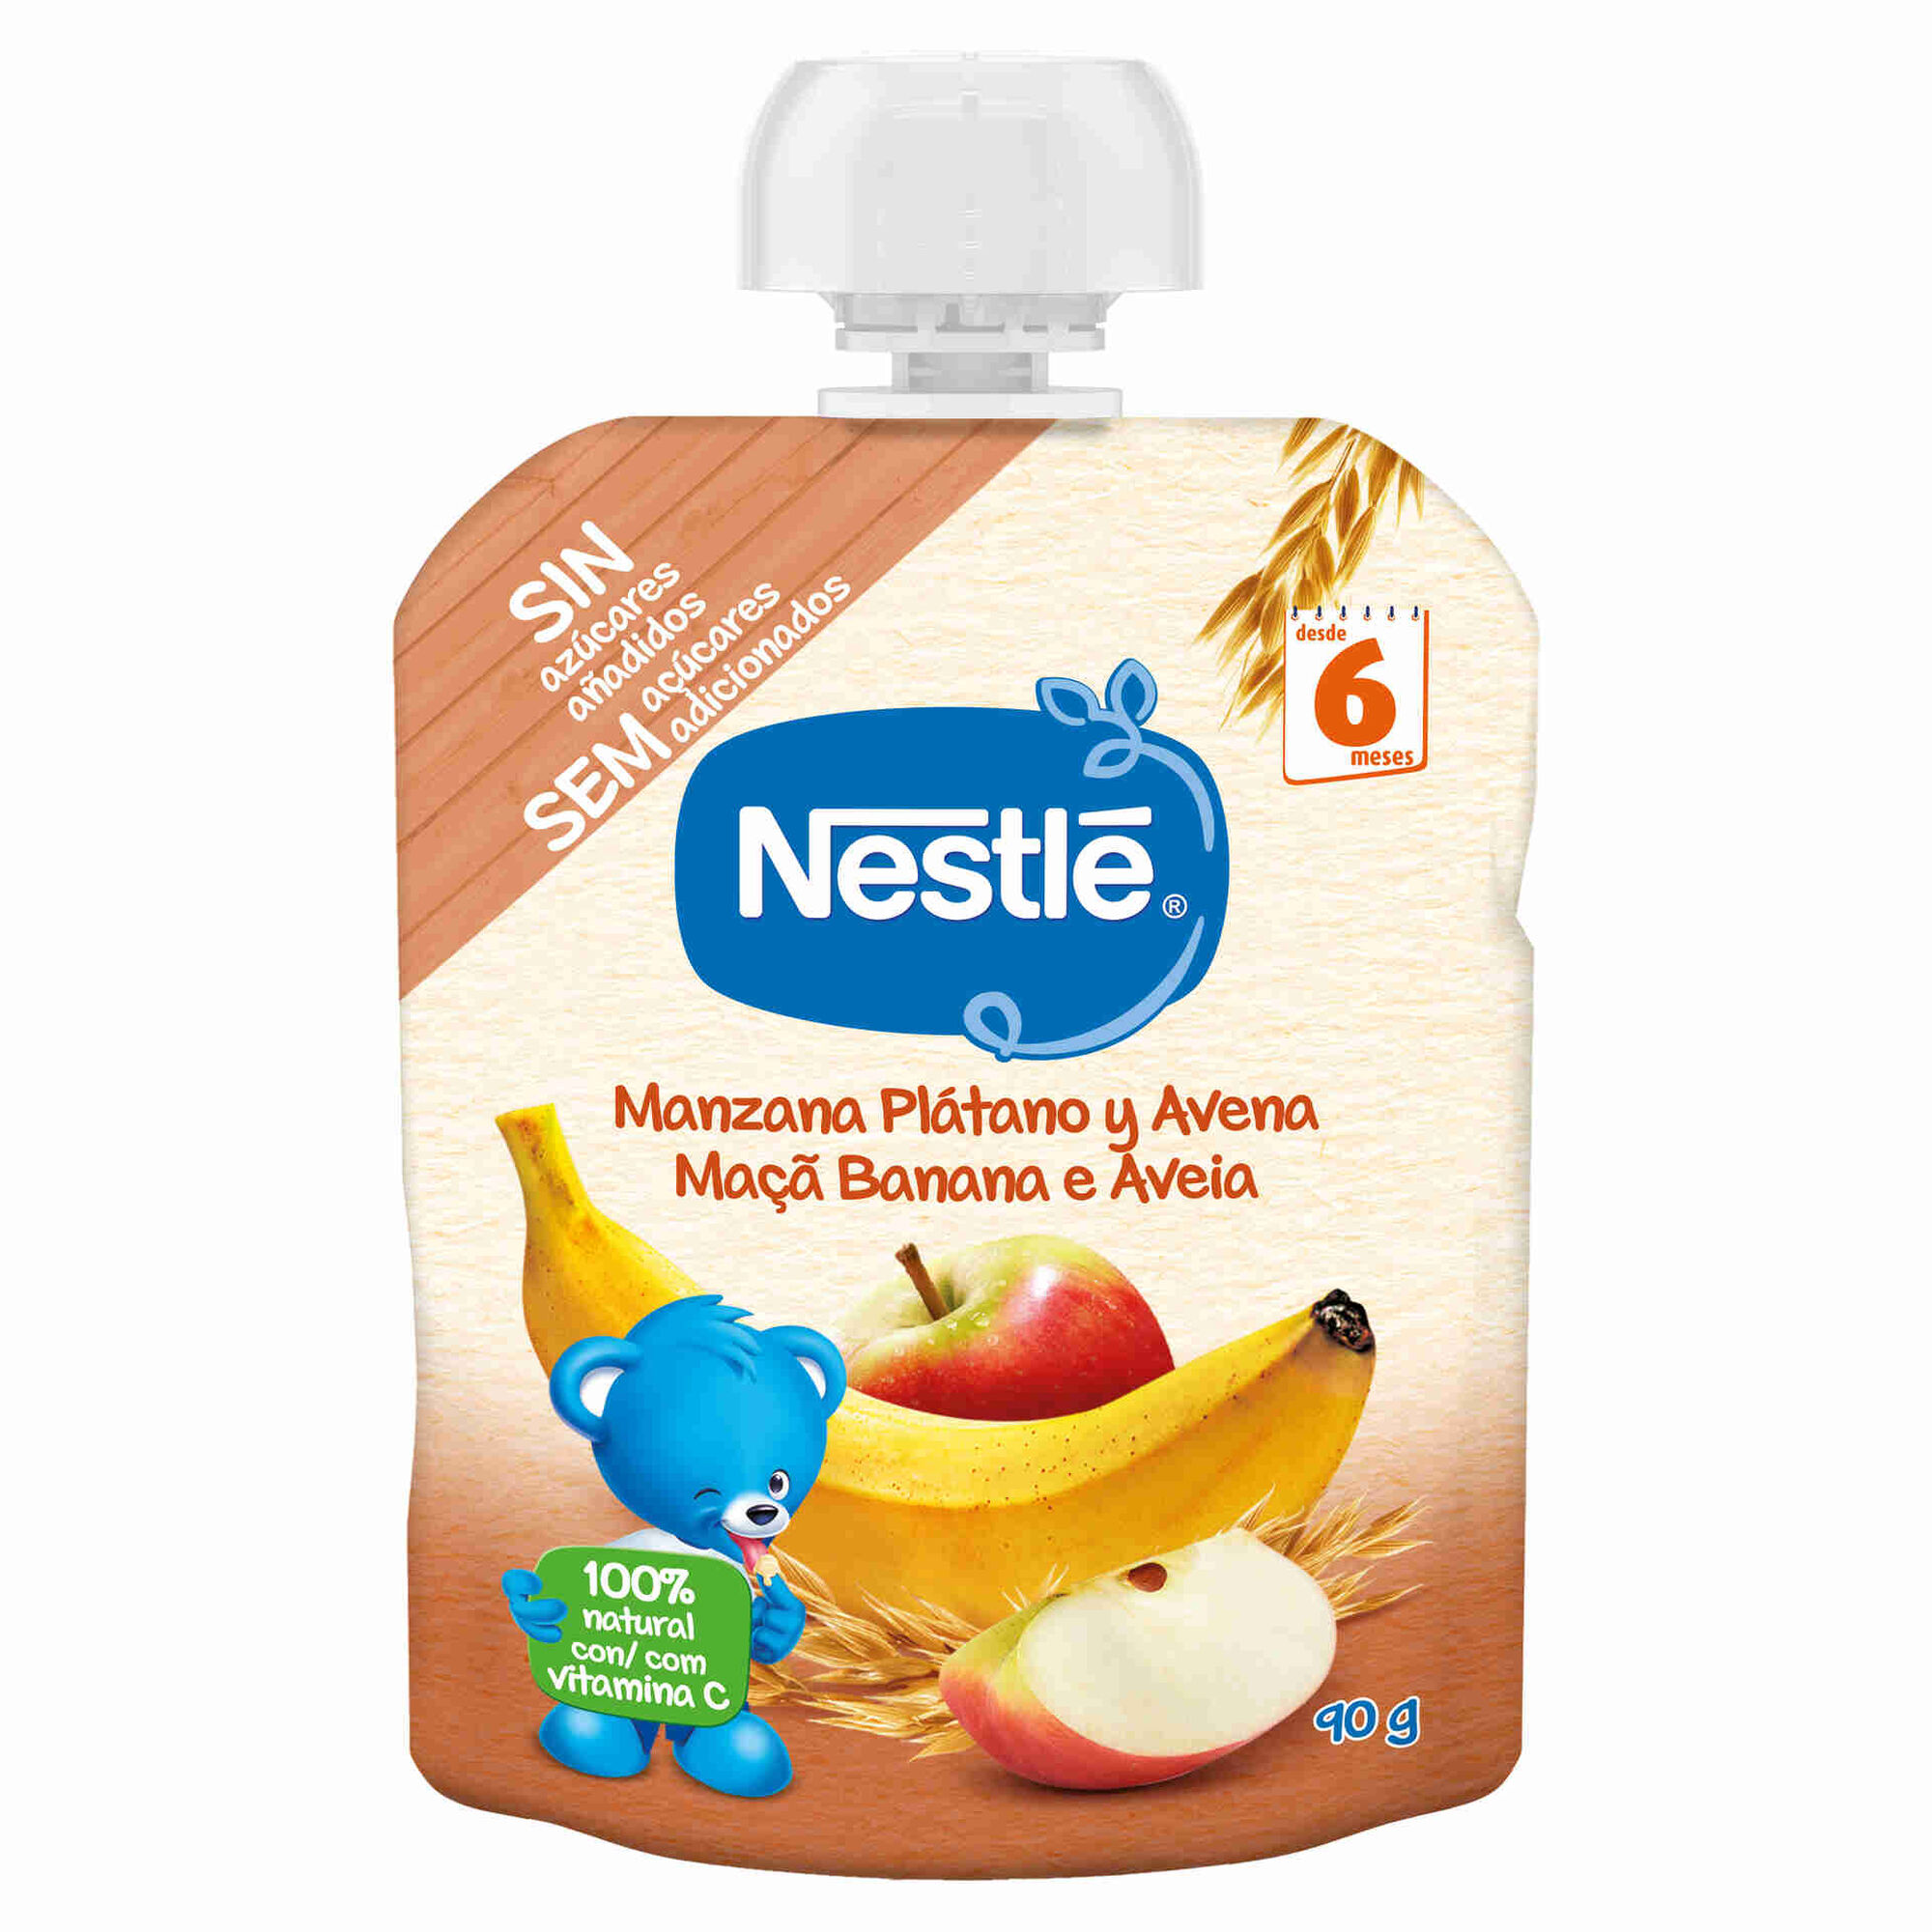 Nestlé Maça, Banana e Aveia 90G 6M+